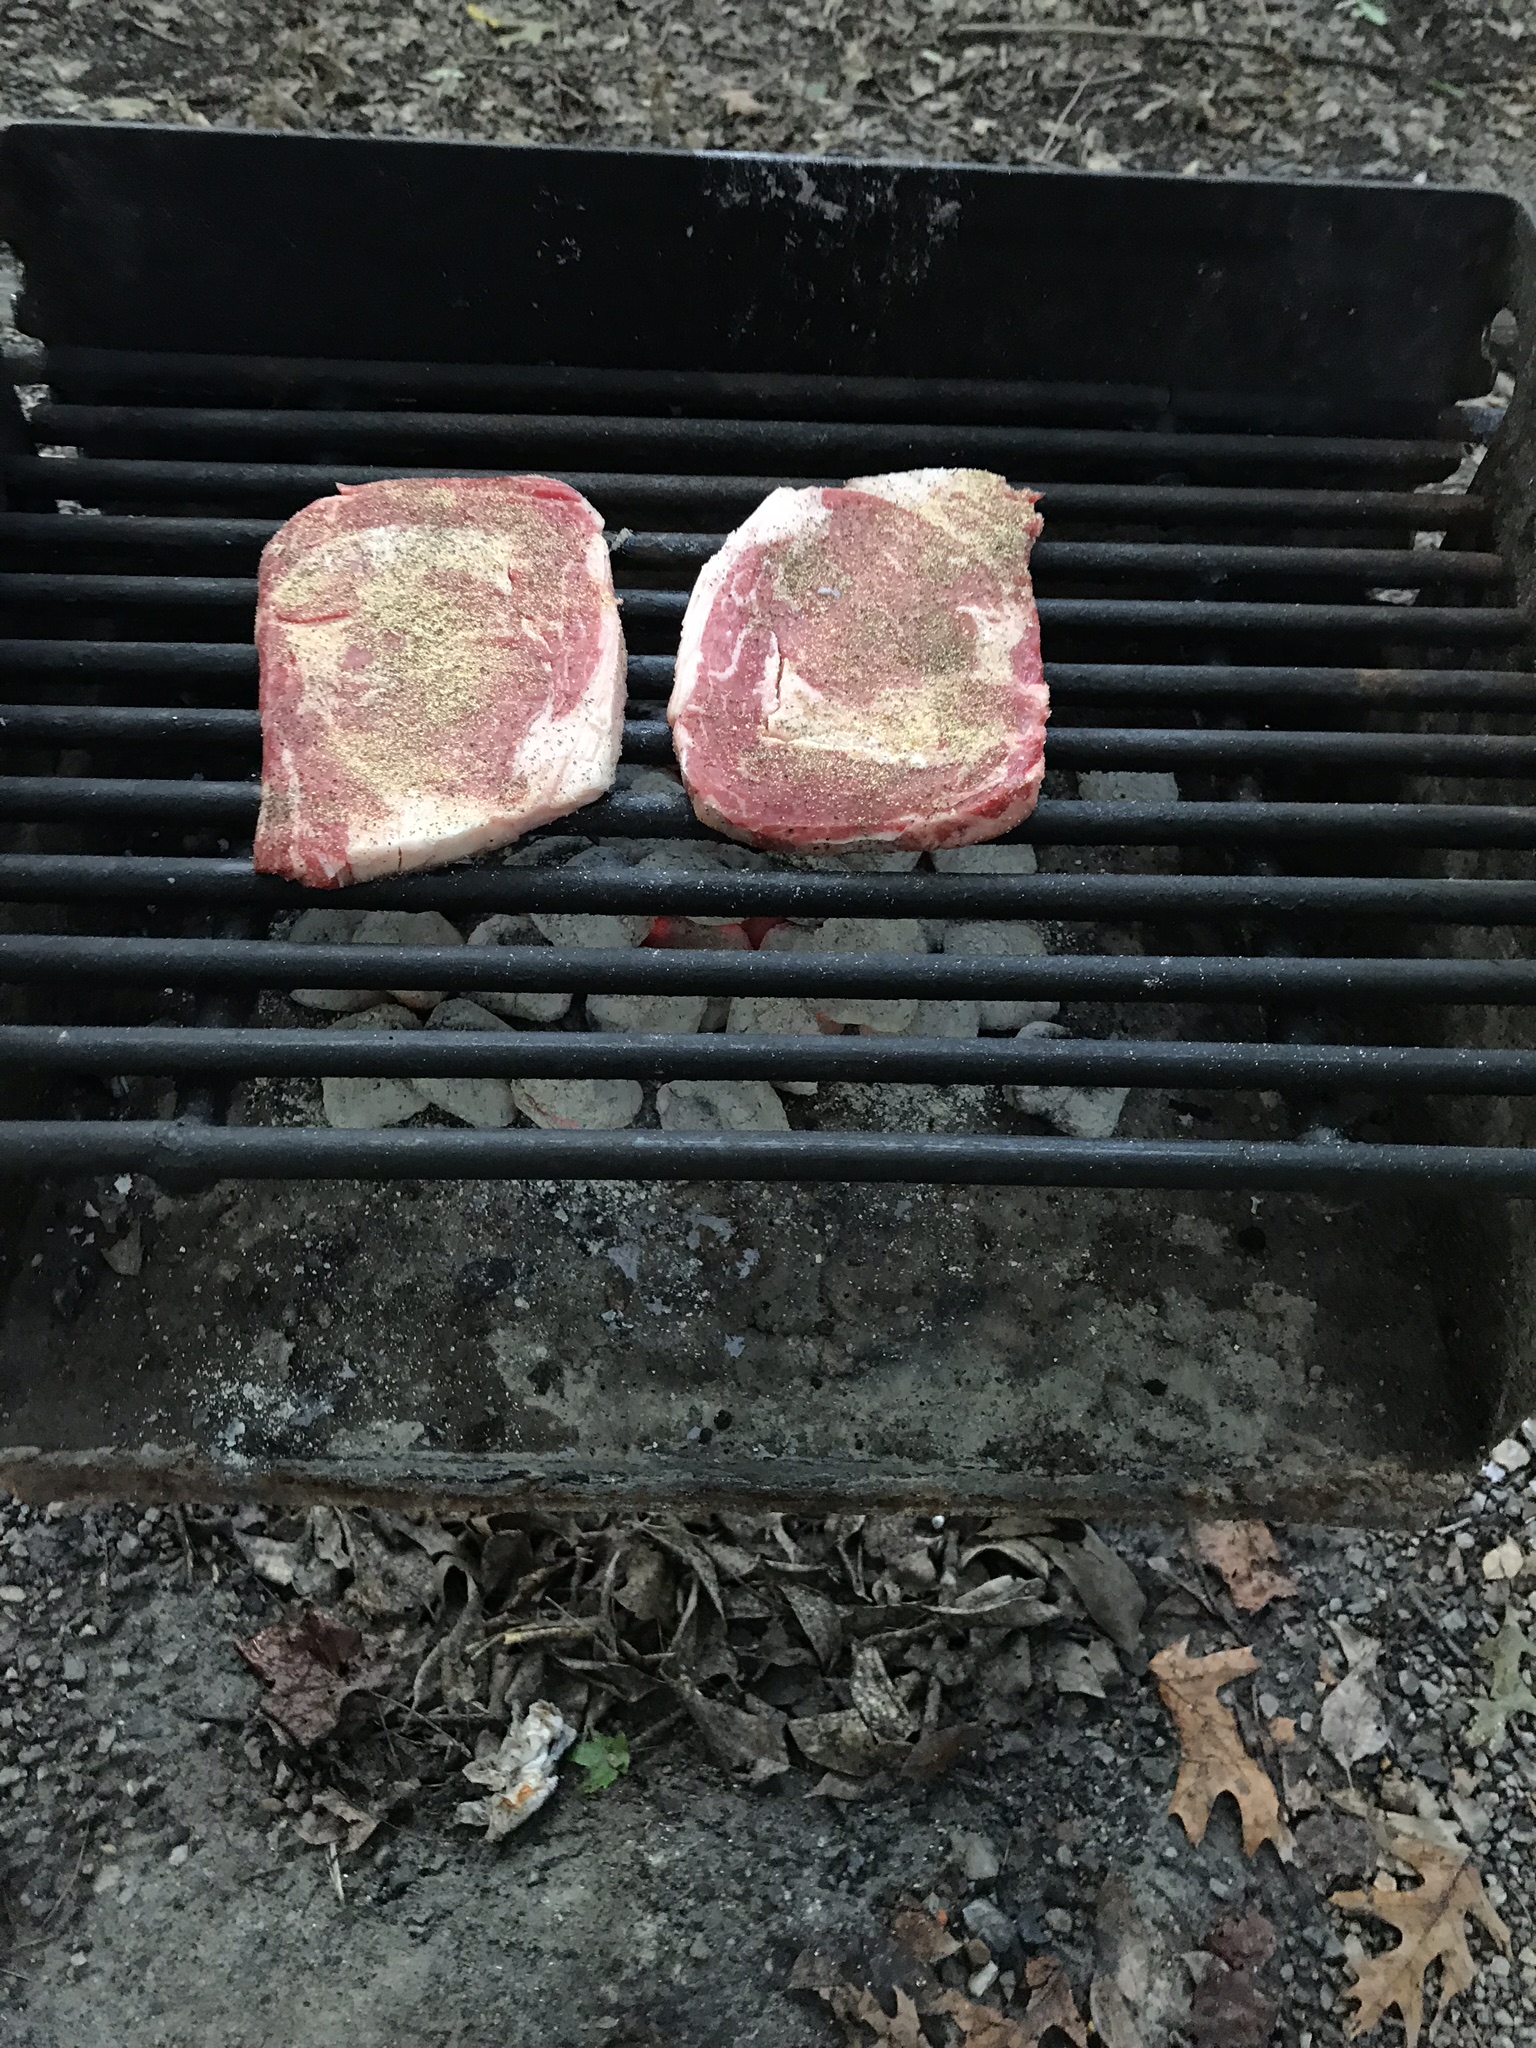 Cooking steaks